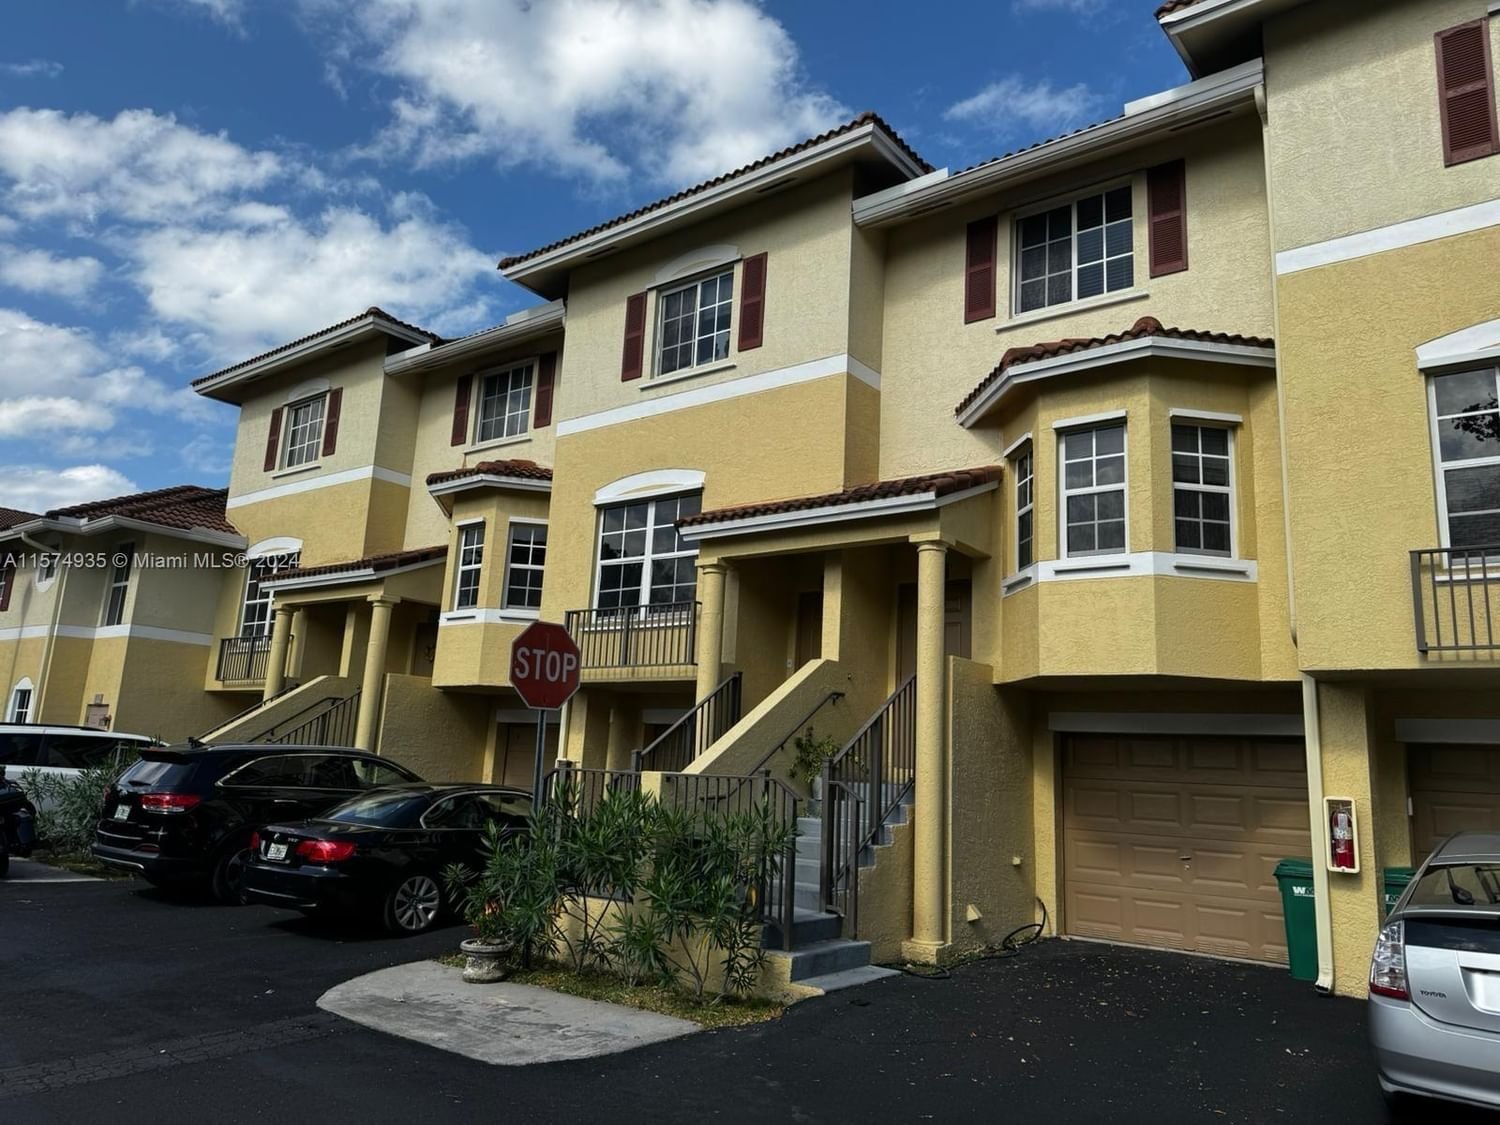 Real estate property located at 8900 8th Ave #1106, Miami-Dade County, THE PRESERVE CONDO, Miami, FL